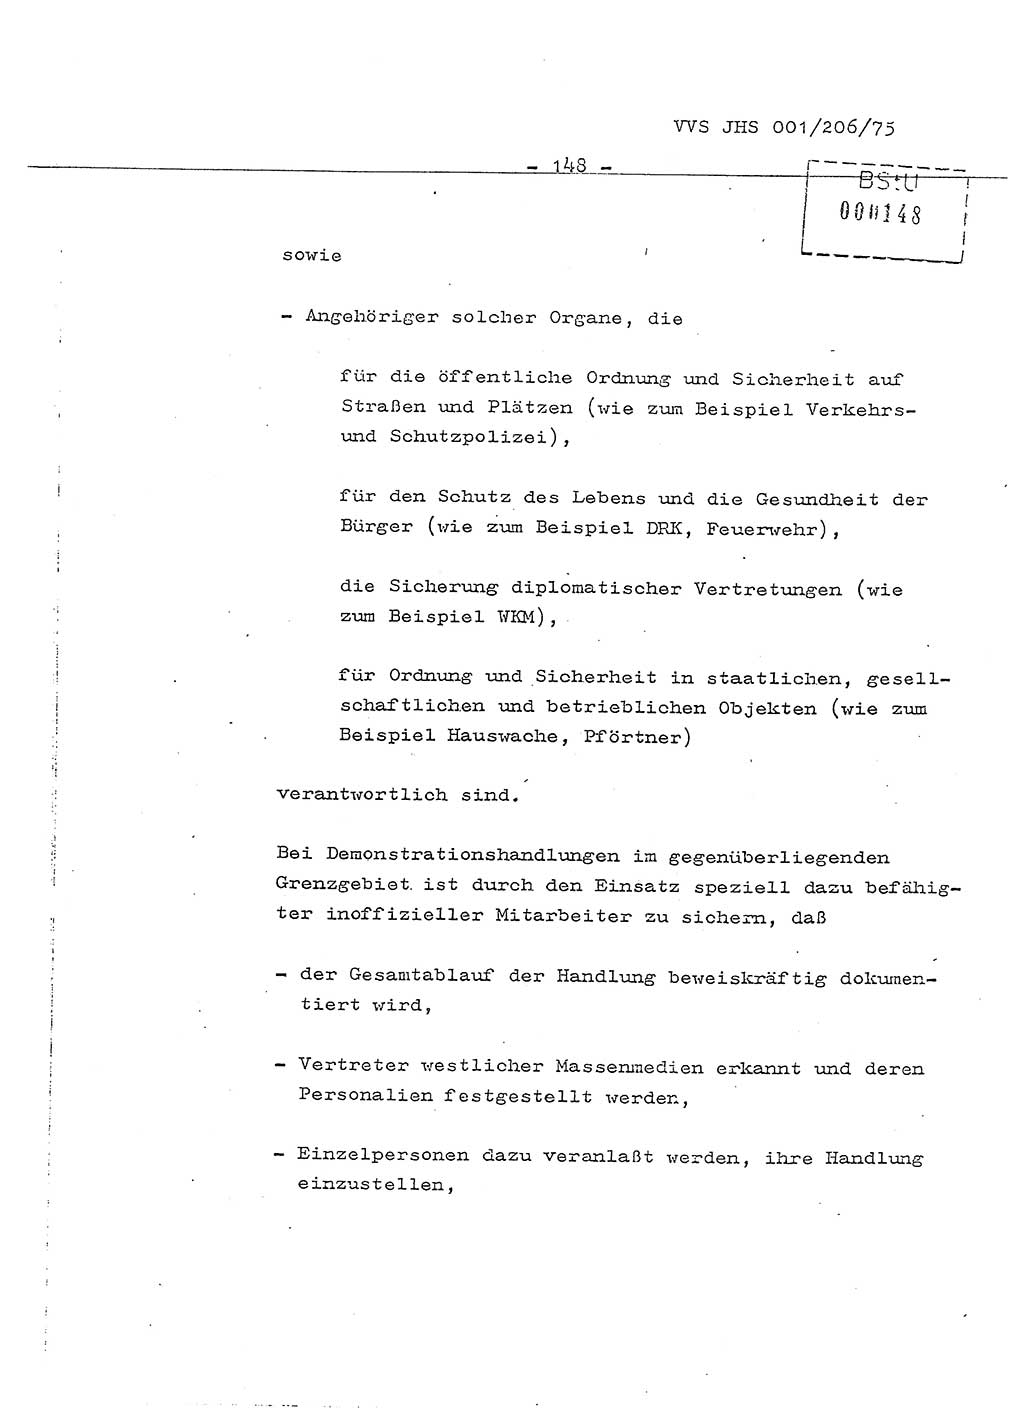 Dissertation Generalmajor Manfred Hummitzsch (Leiter der BV Leipzig), Generalmajor Heinz Fiedler (HA Ⅵ), Oberst Rolf Fister (HA Ⅸ), Ministerium für Staatssicherheit (MfS) [Deutsche Demokratische Republik (DDR)], Juristische Hochschule (JHS), Vertrauliche Verschlußsache (VVS) 001-206/75, Potsdam 1975, Seite 148 (Diss. MfS DDR JHS VVS 001-206/75 1975, S. 148)